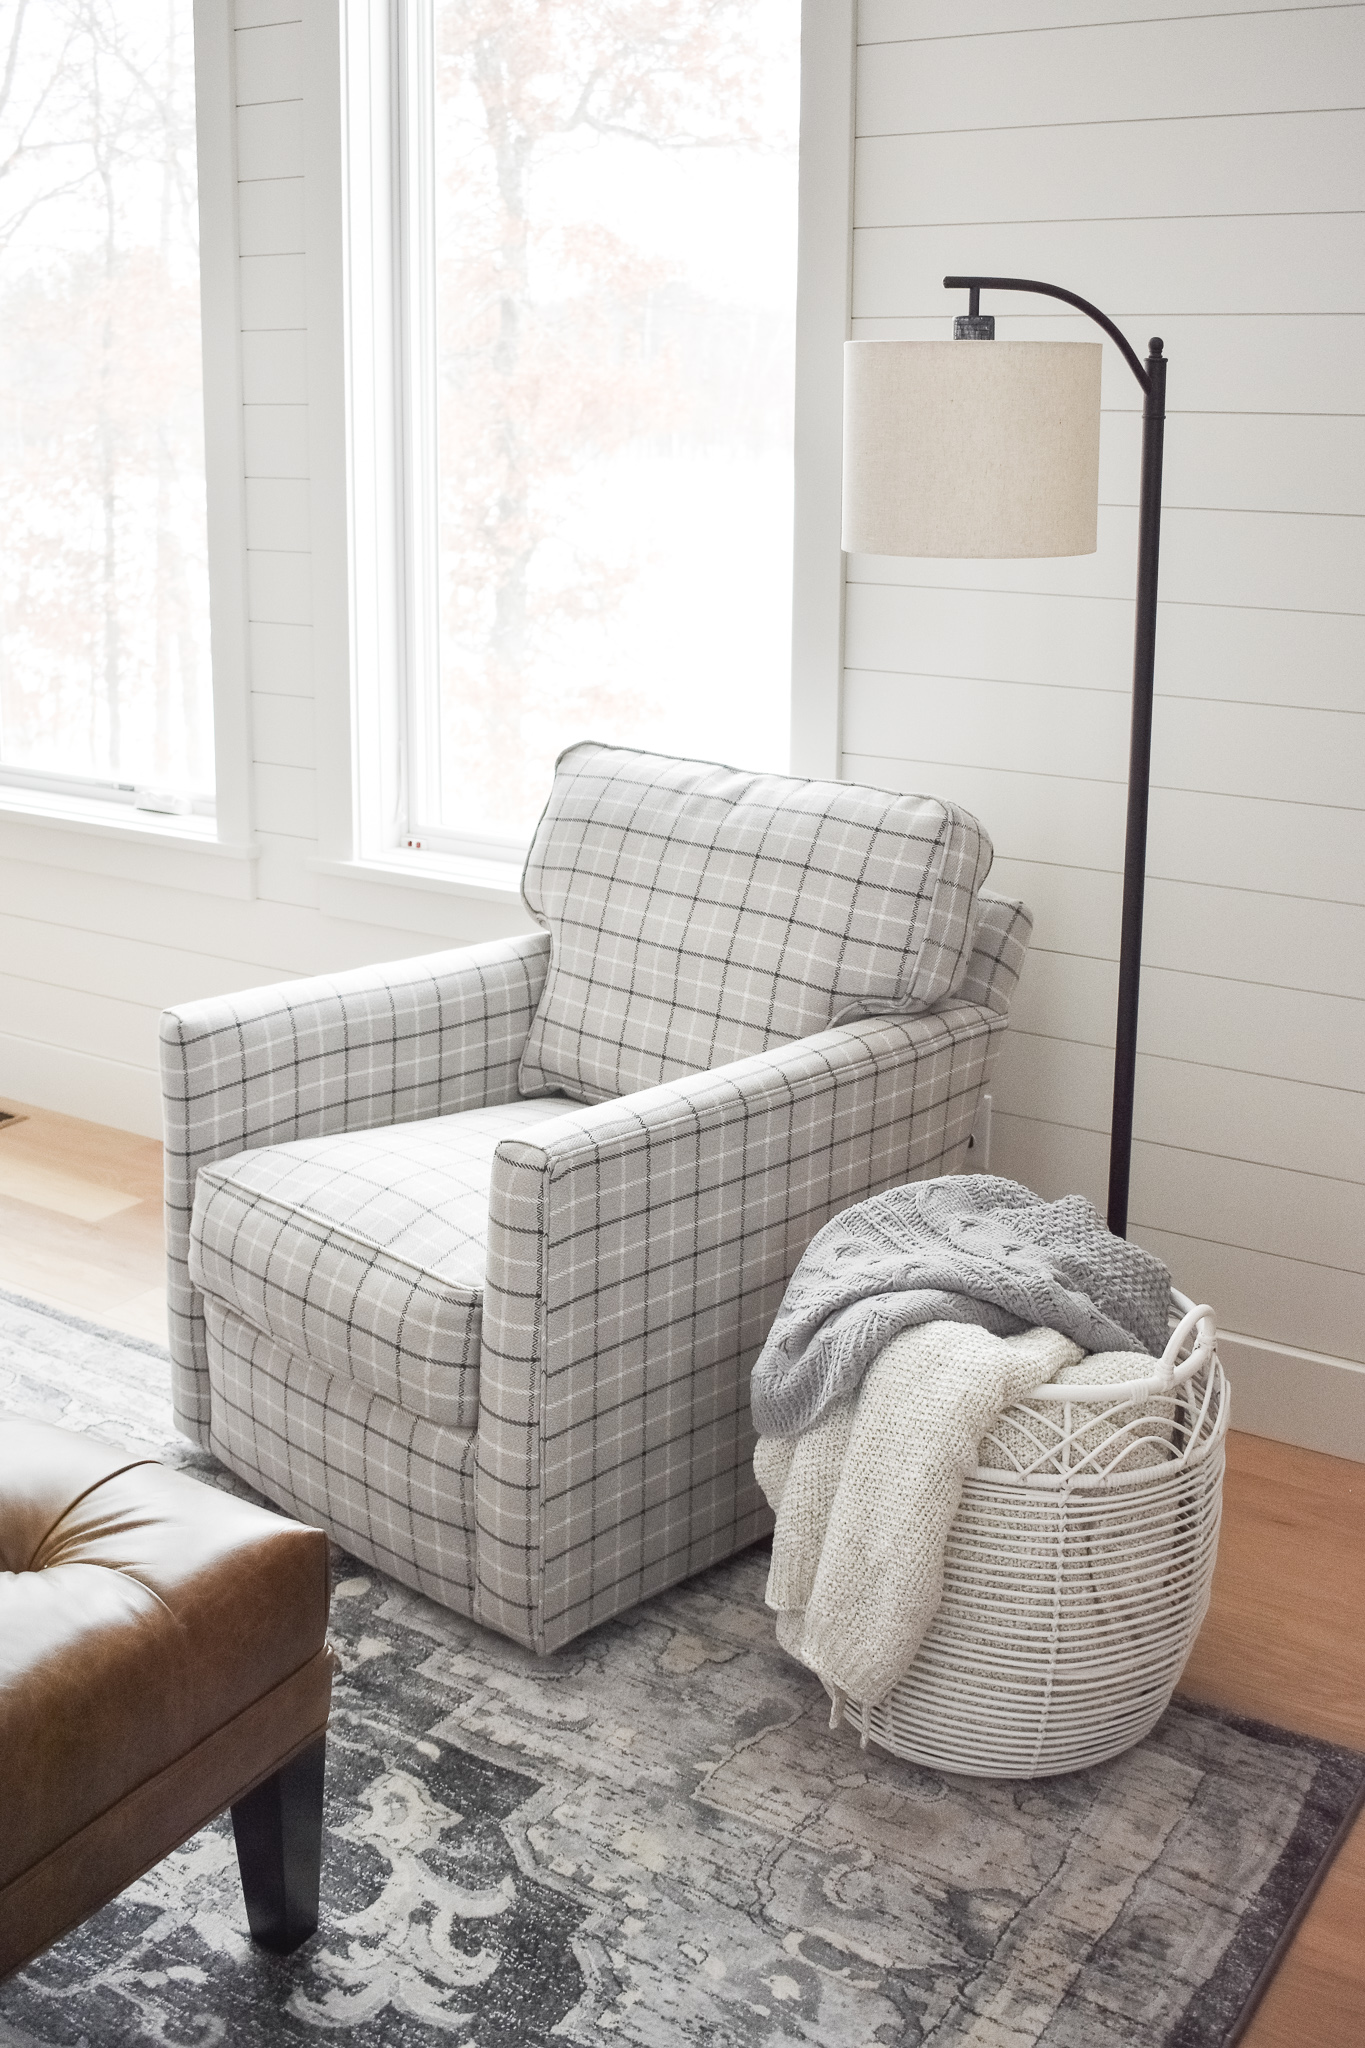 Swivel Chair by Rowe in grid pattern